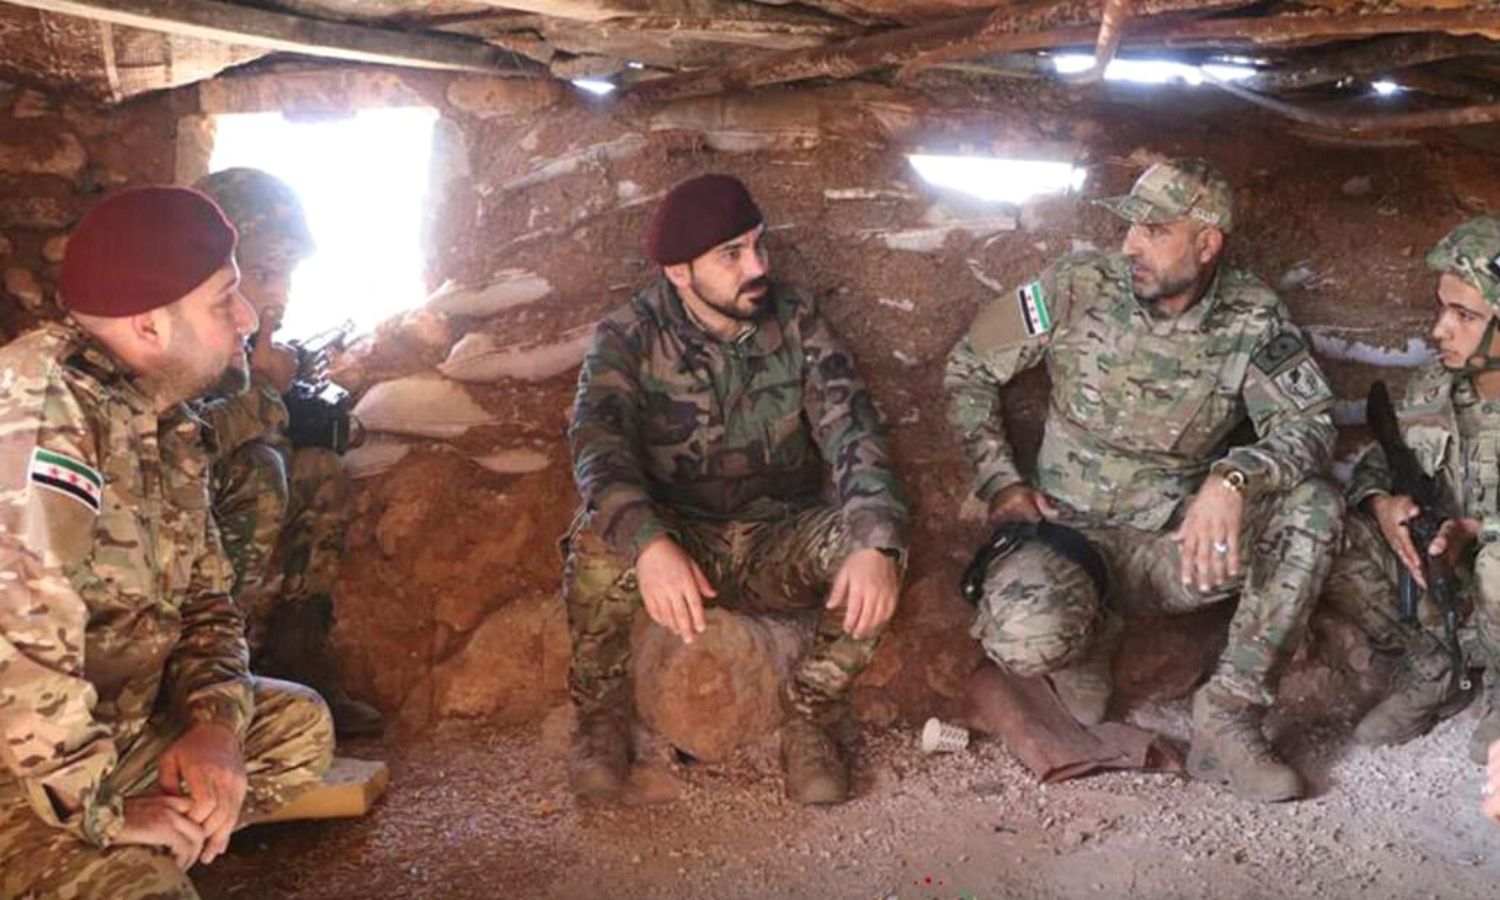 قائد "فرقة الحمزة" التابعة لـ"الجيش الوطني السوري" سيف بولاد (أبو بكر) وعناصر من فصيله في ريف حلب الشرقي- 13 من أيار 2021 (فرقة الحمزة)